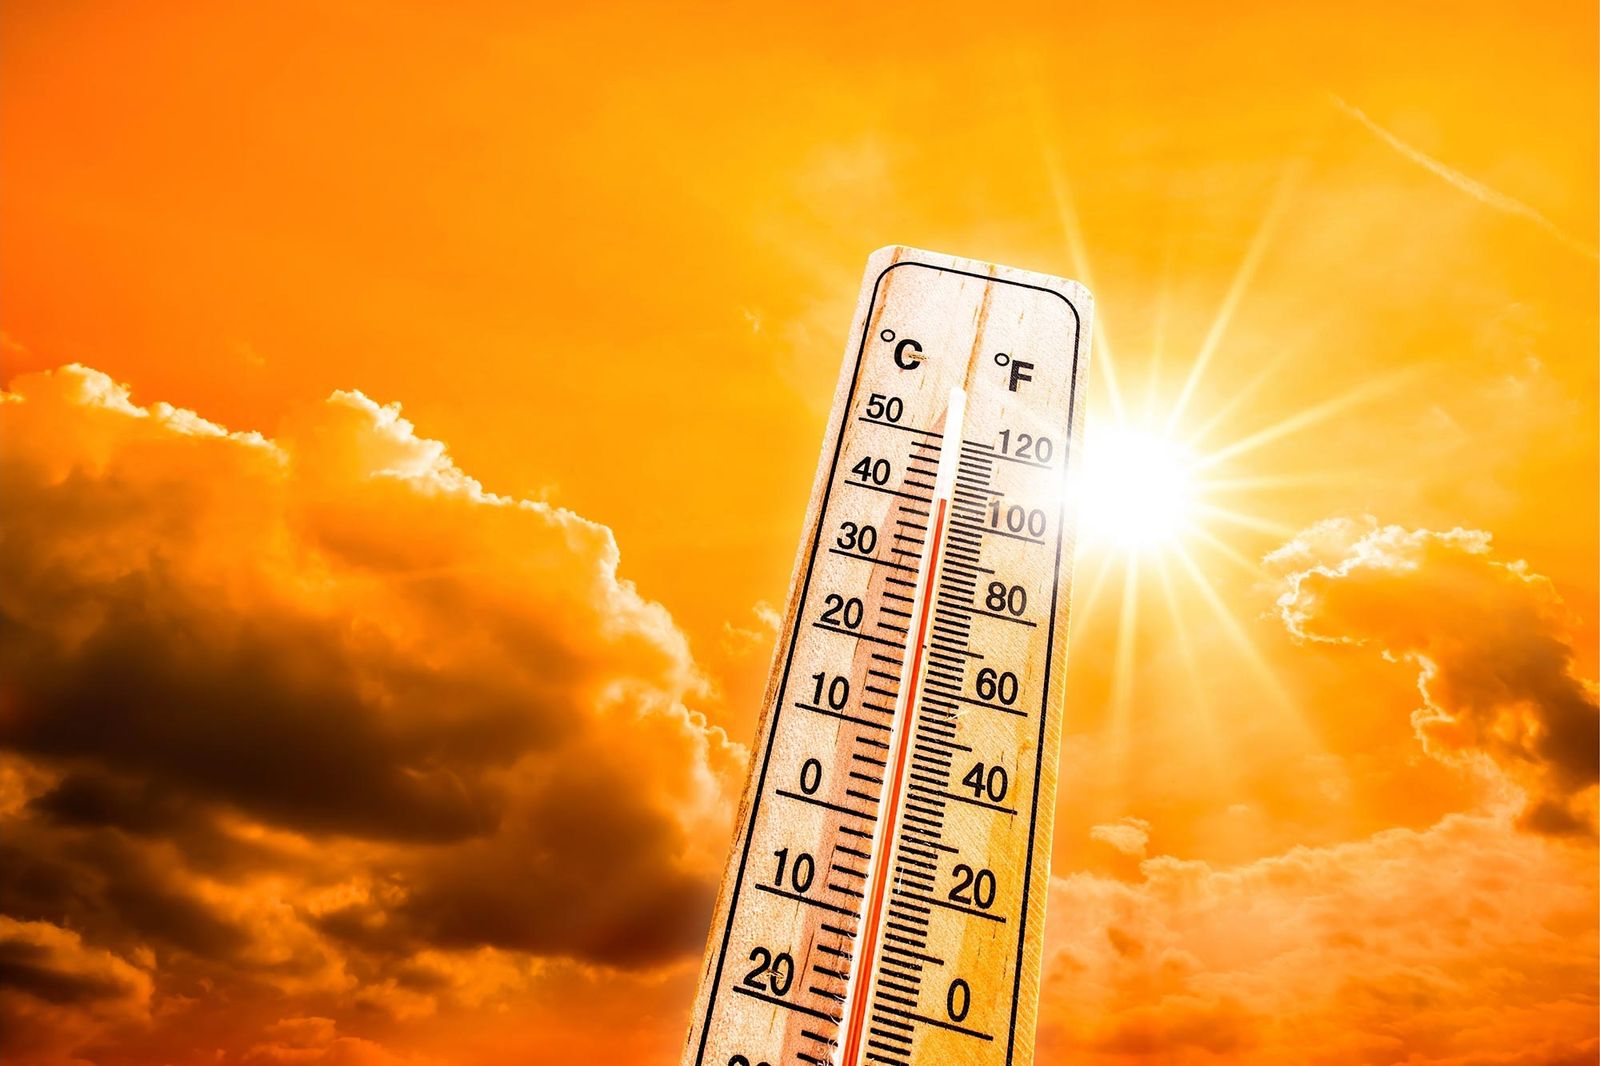 Heatwave alert from Leeds City Council